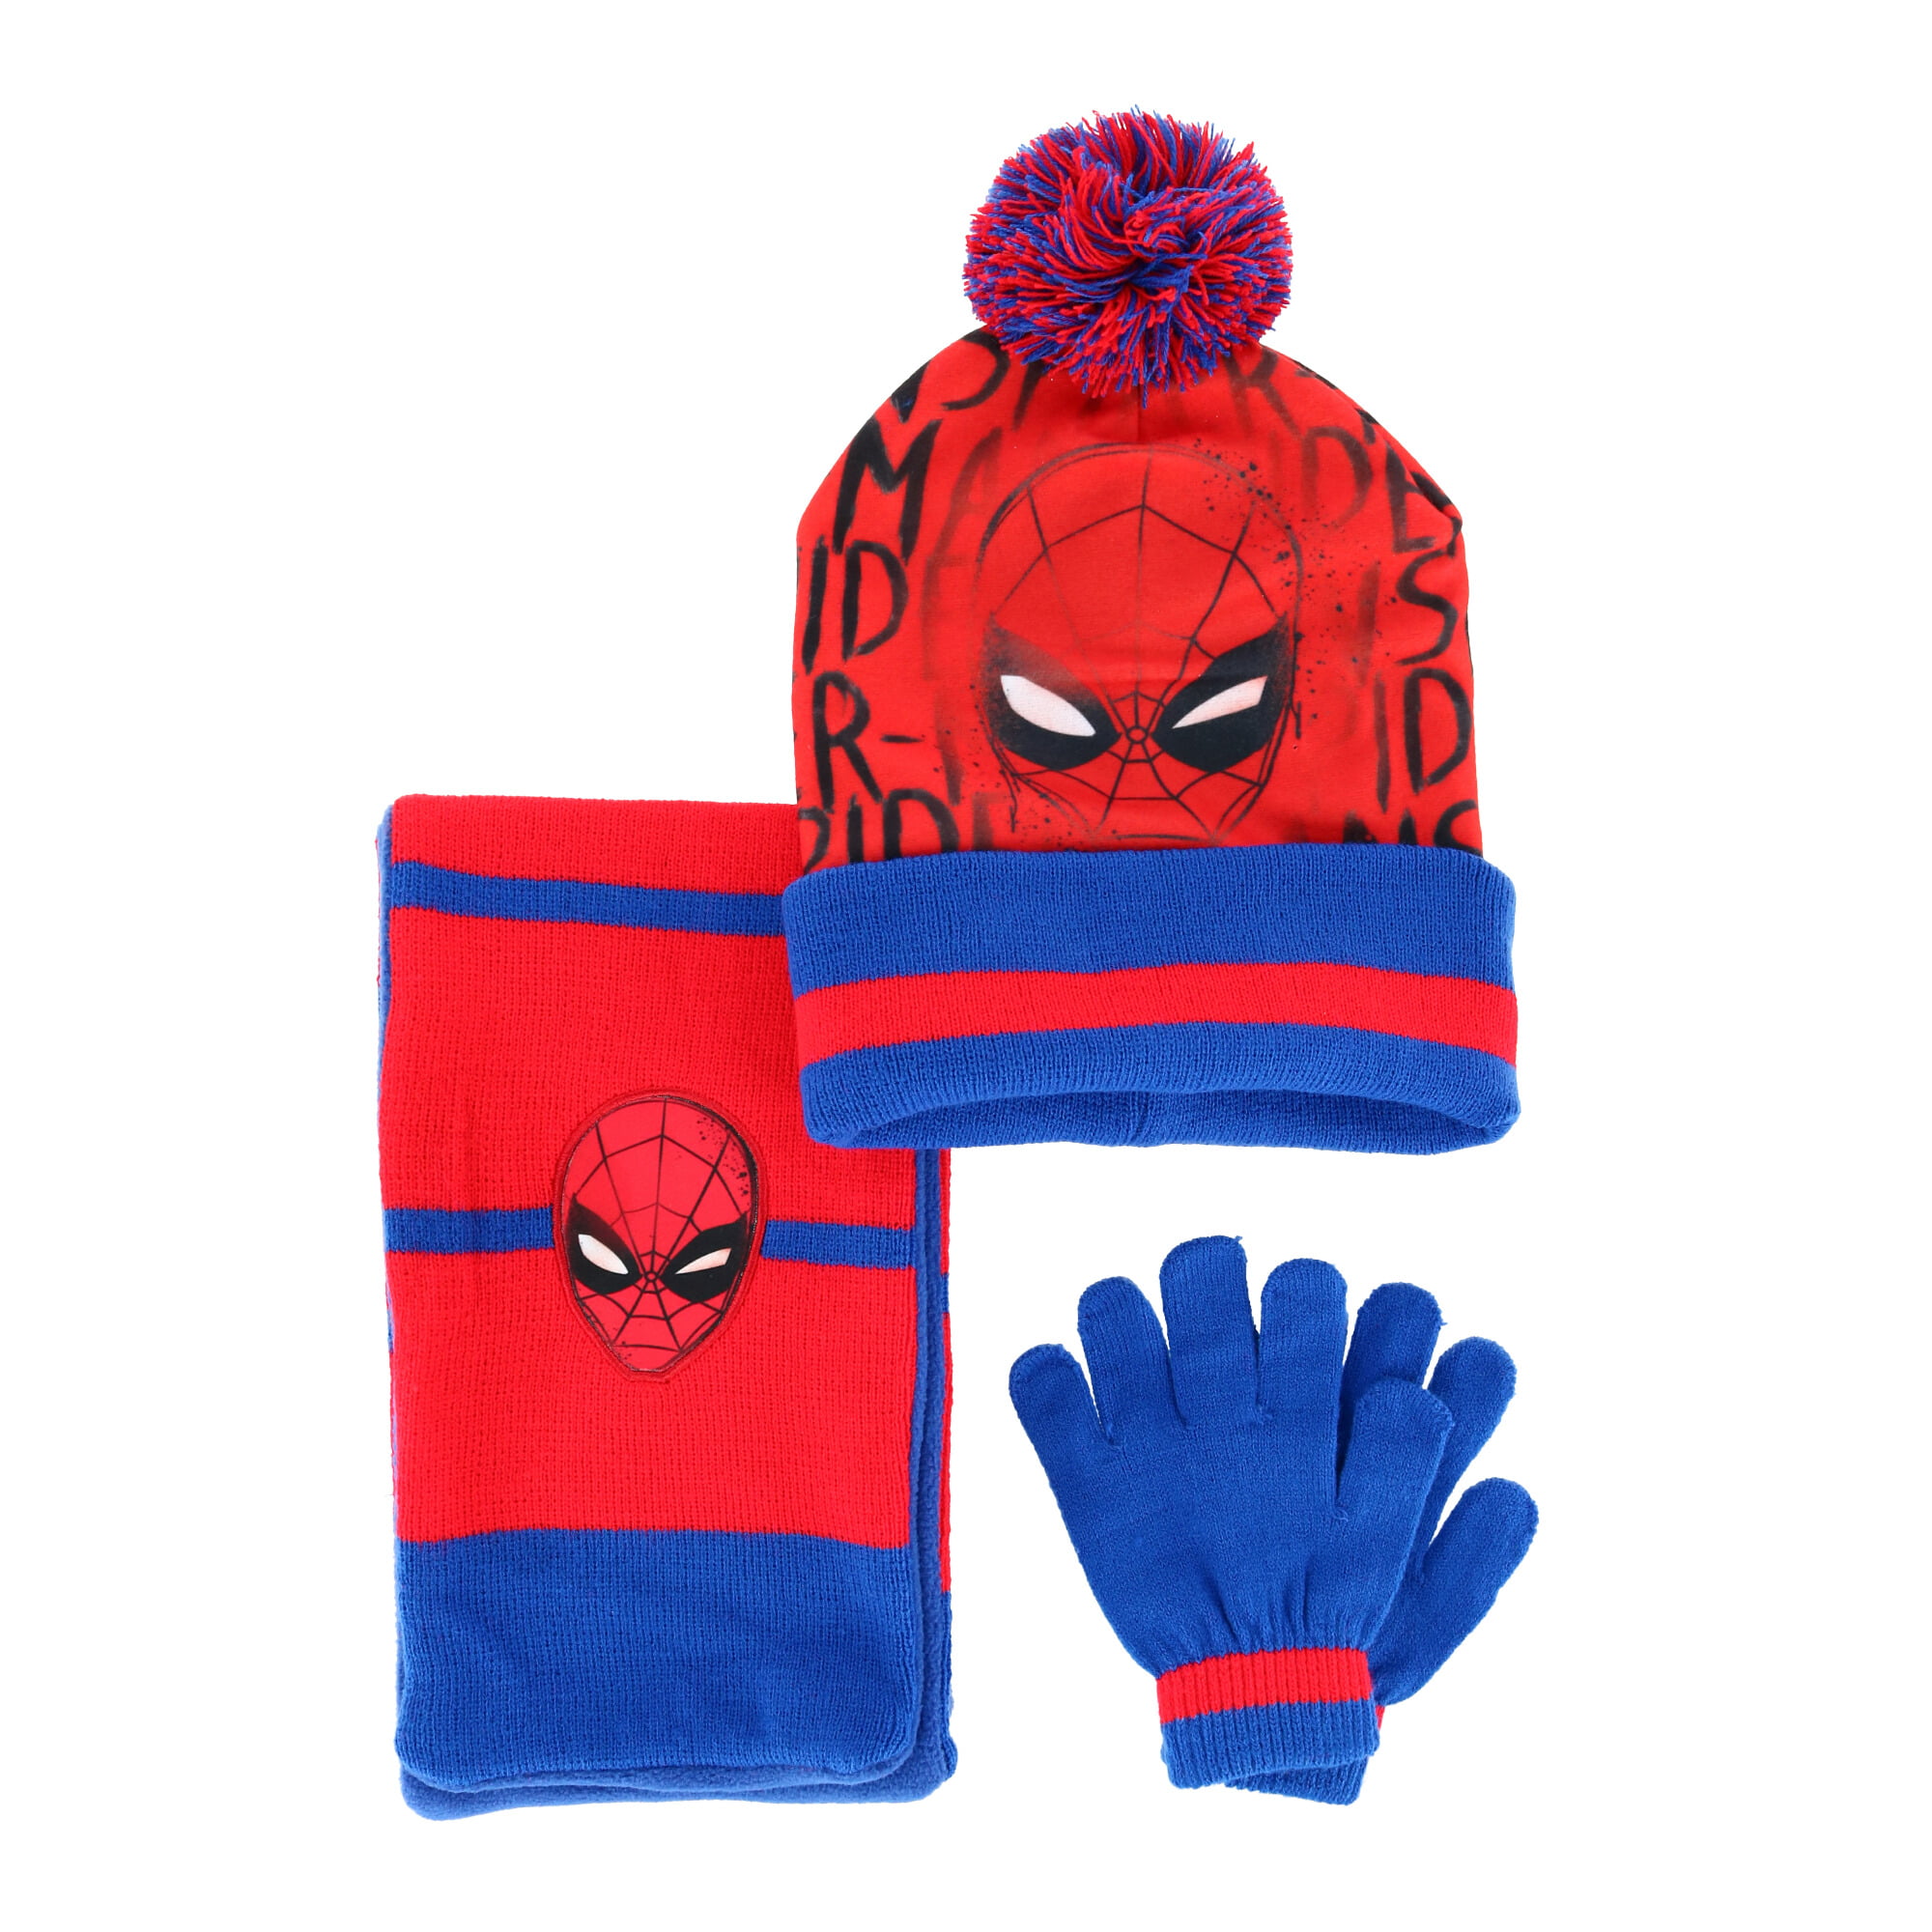 Textiel Trade Kids' 3-6 Spiderman Hat Scarf and Glove 3-Piece Set ...